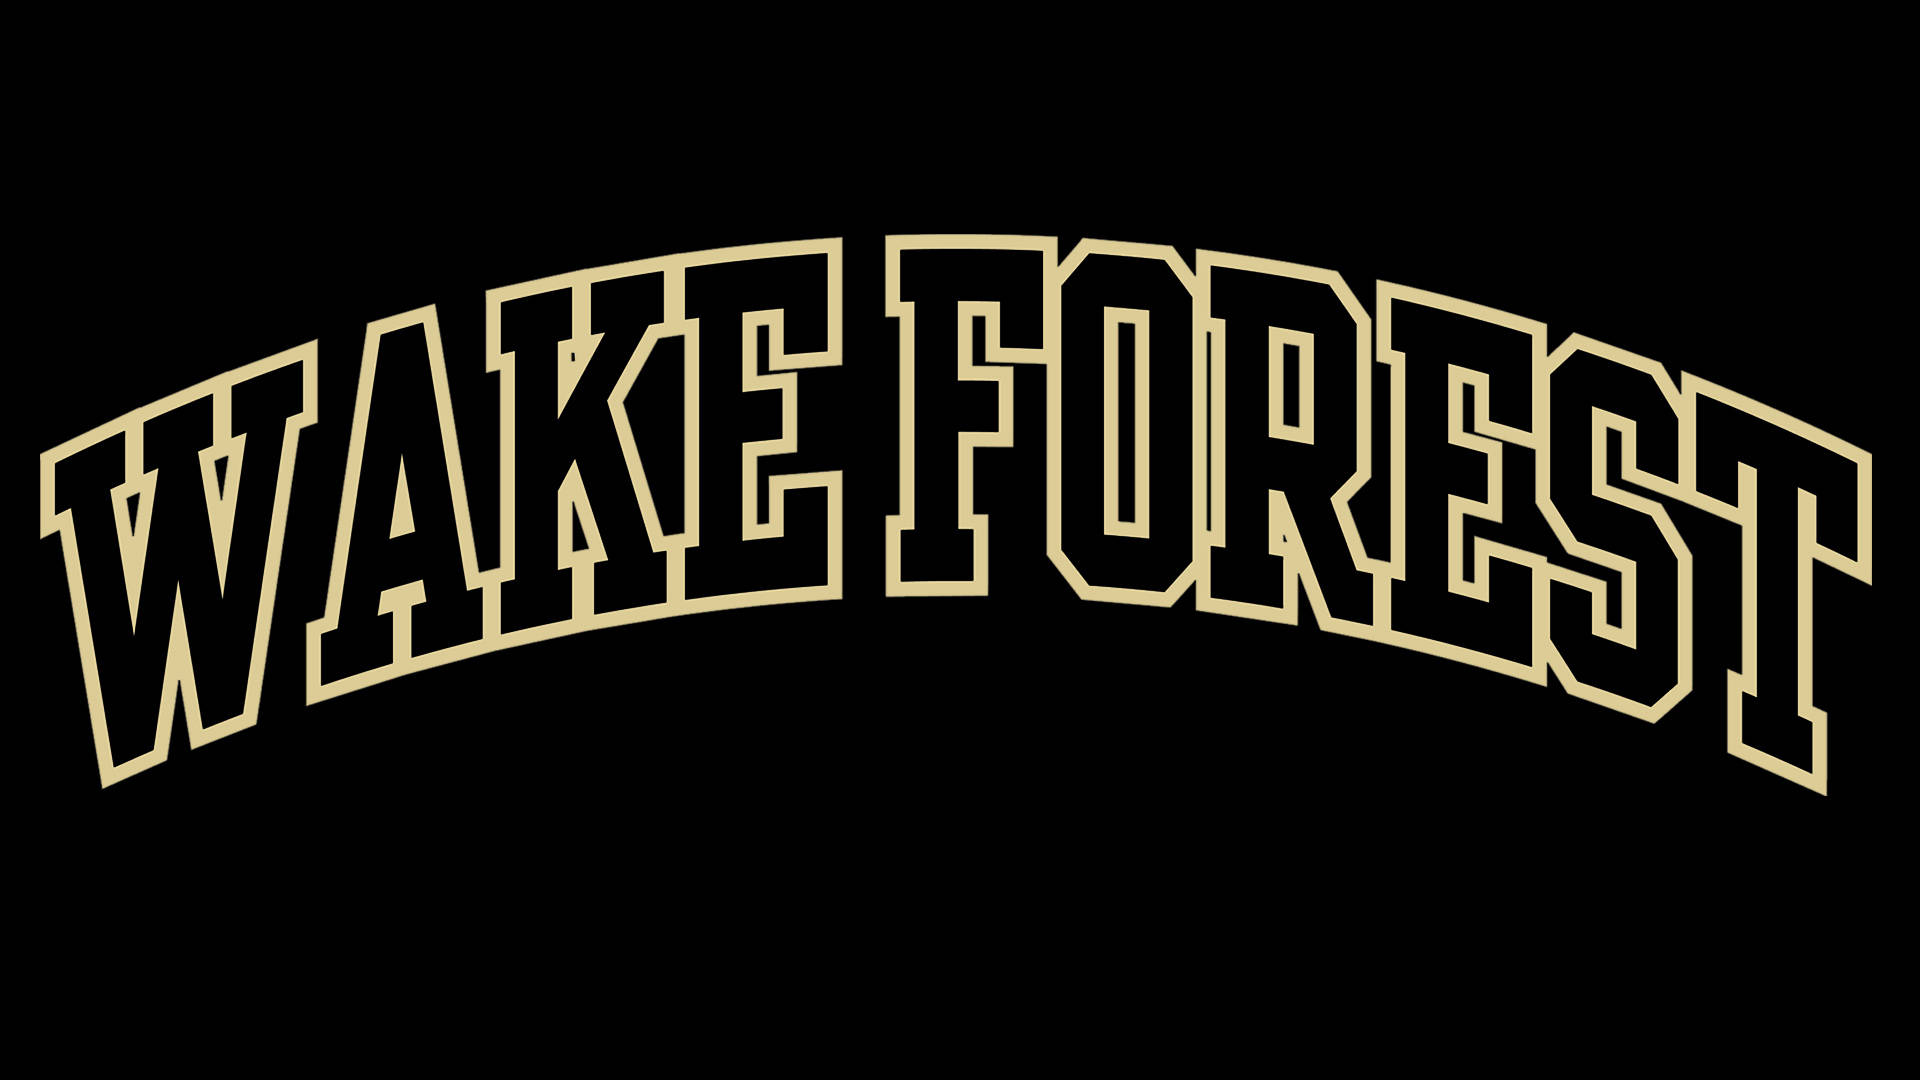 Wakeforest University Logo Dunkel Wallpaper